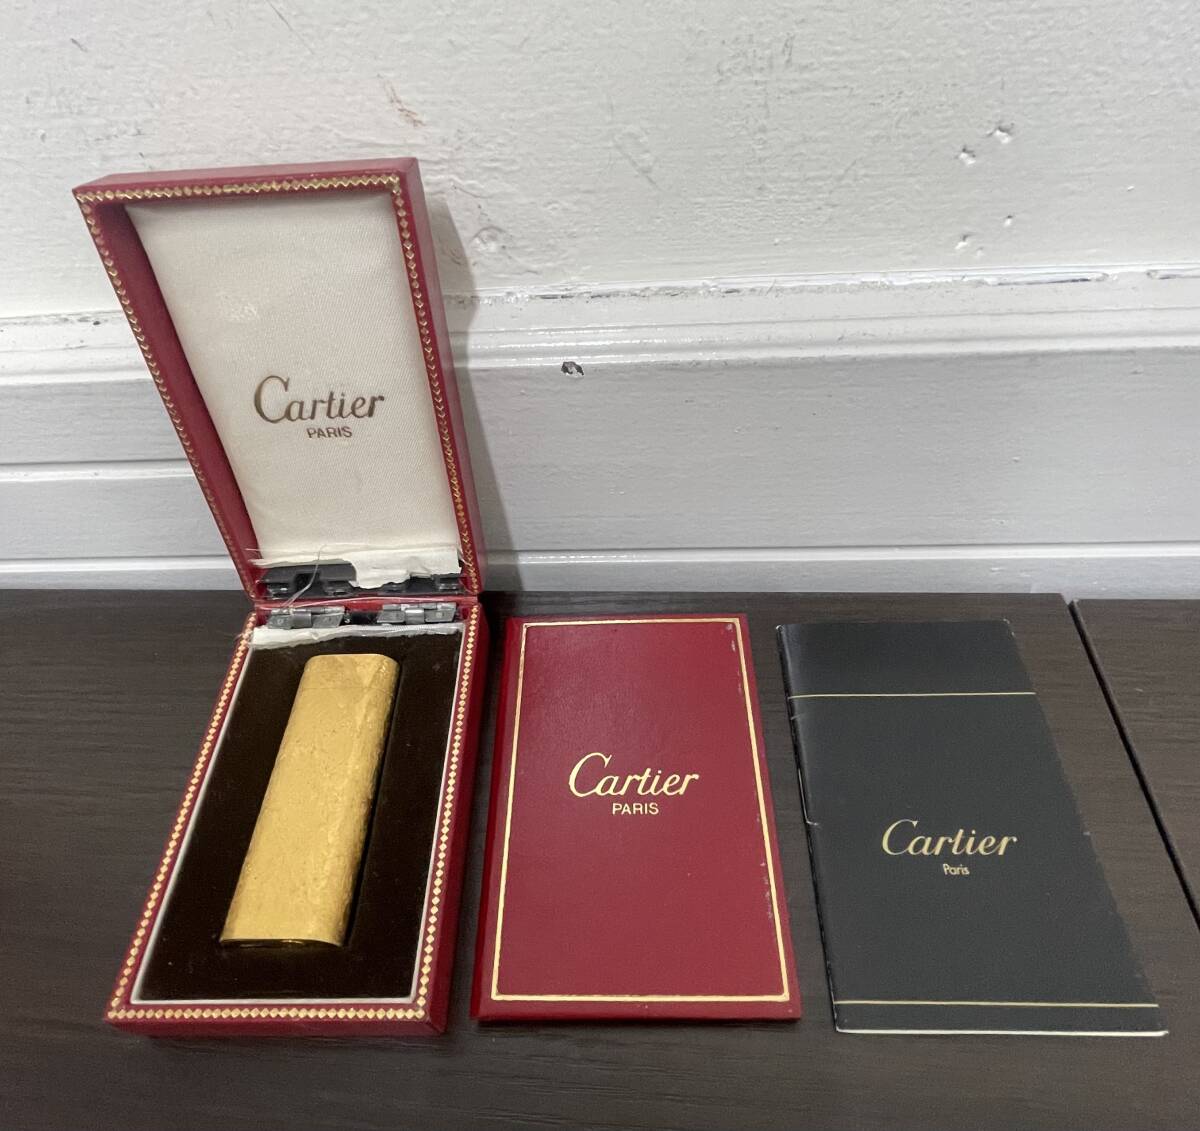  Cartier カルティエ ガスライター オーバル型 ローラー式 ゴールドカラー 喫煙具 喫煙グッズ 箱付き の画像1